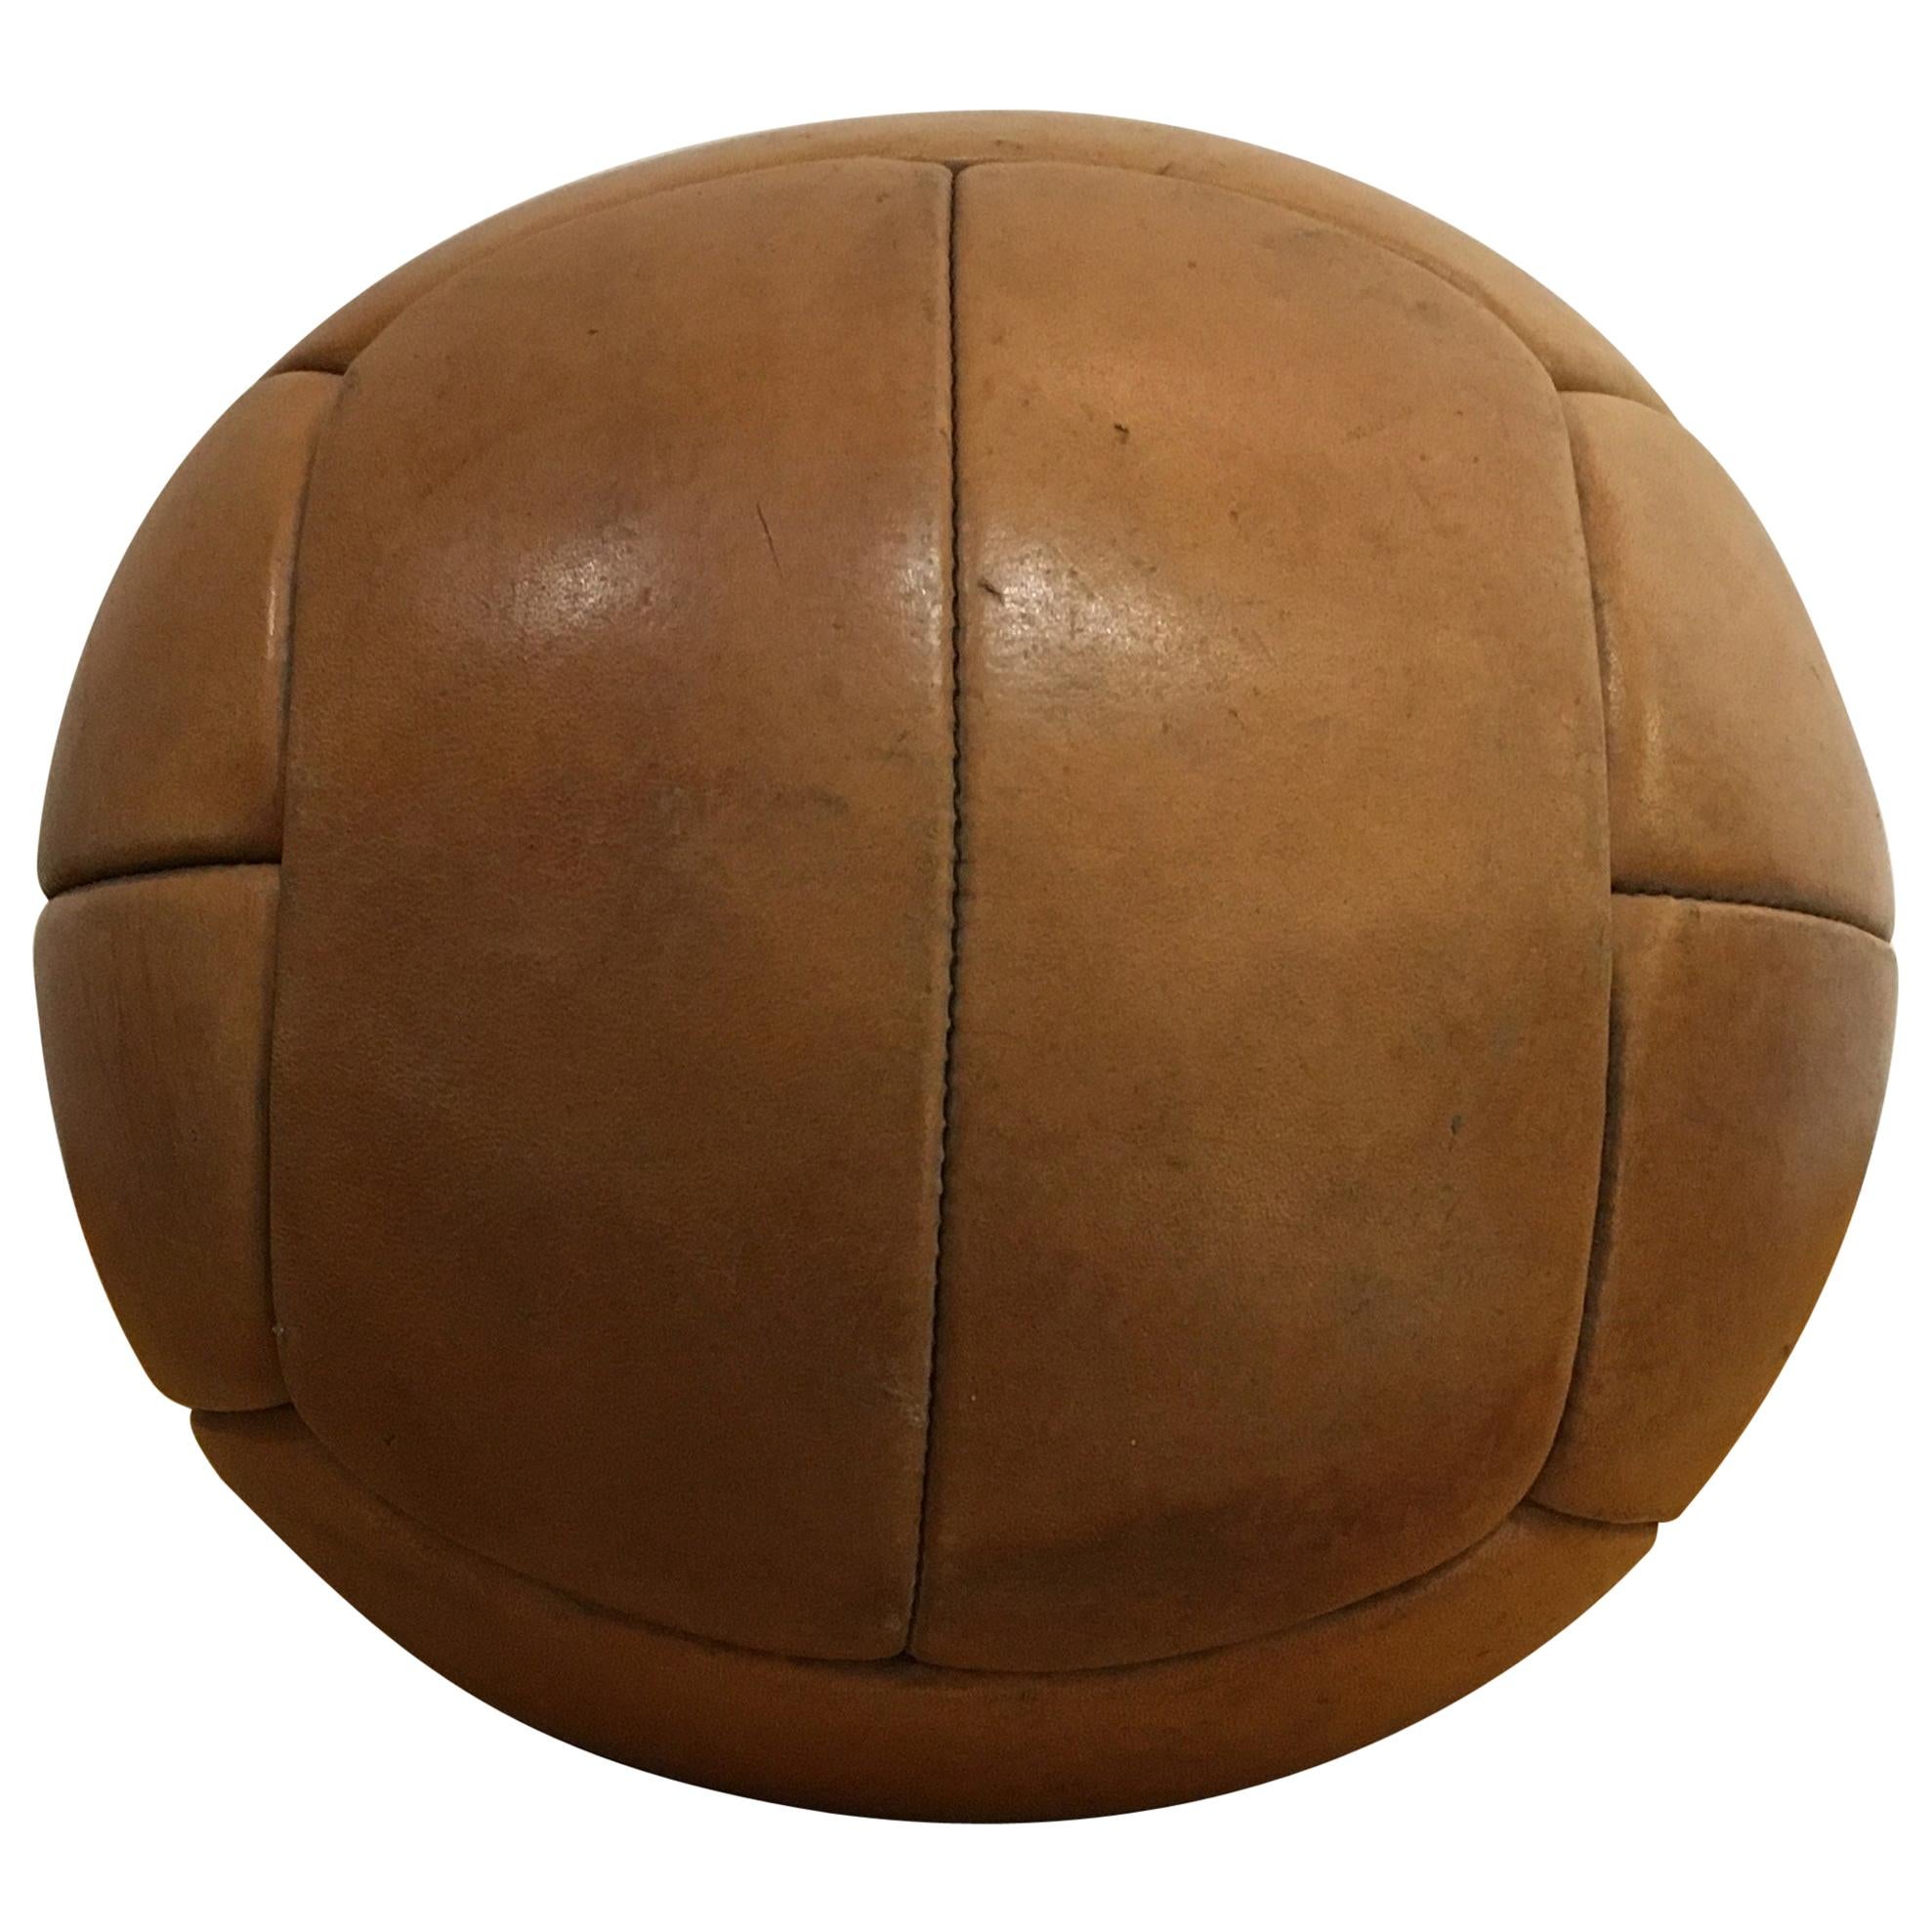 Vintage Brown Leather Medicine Ball, 3kg, 1930s